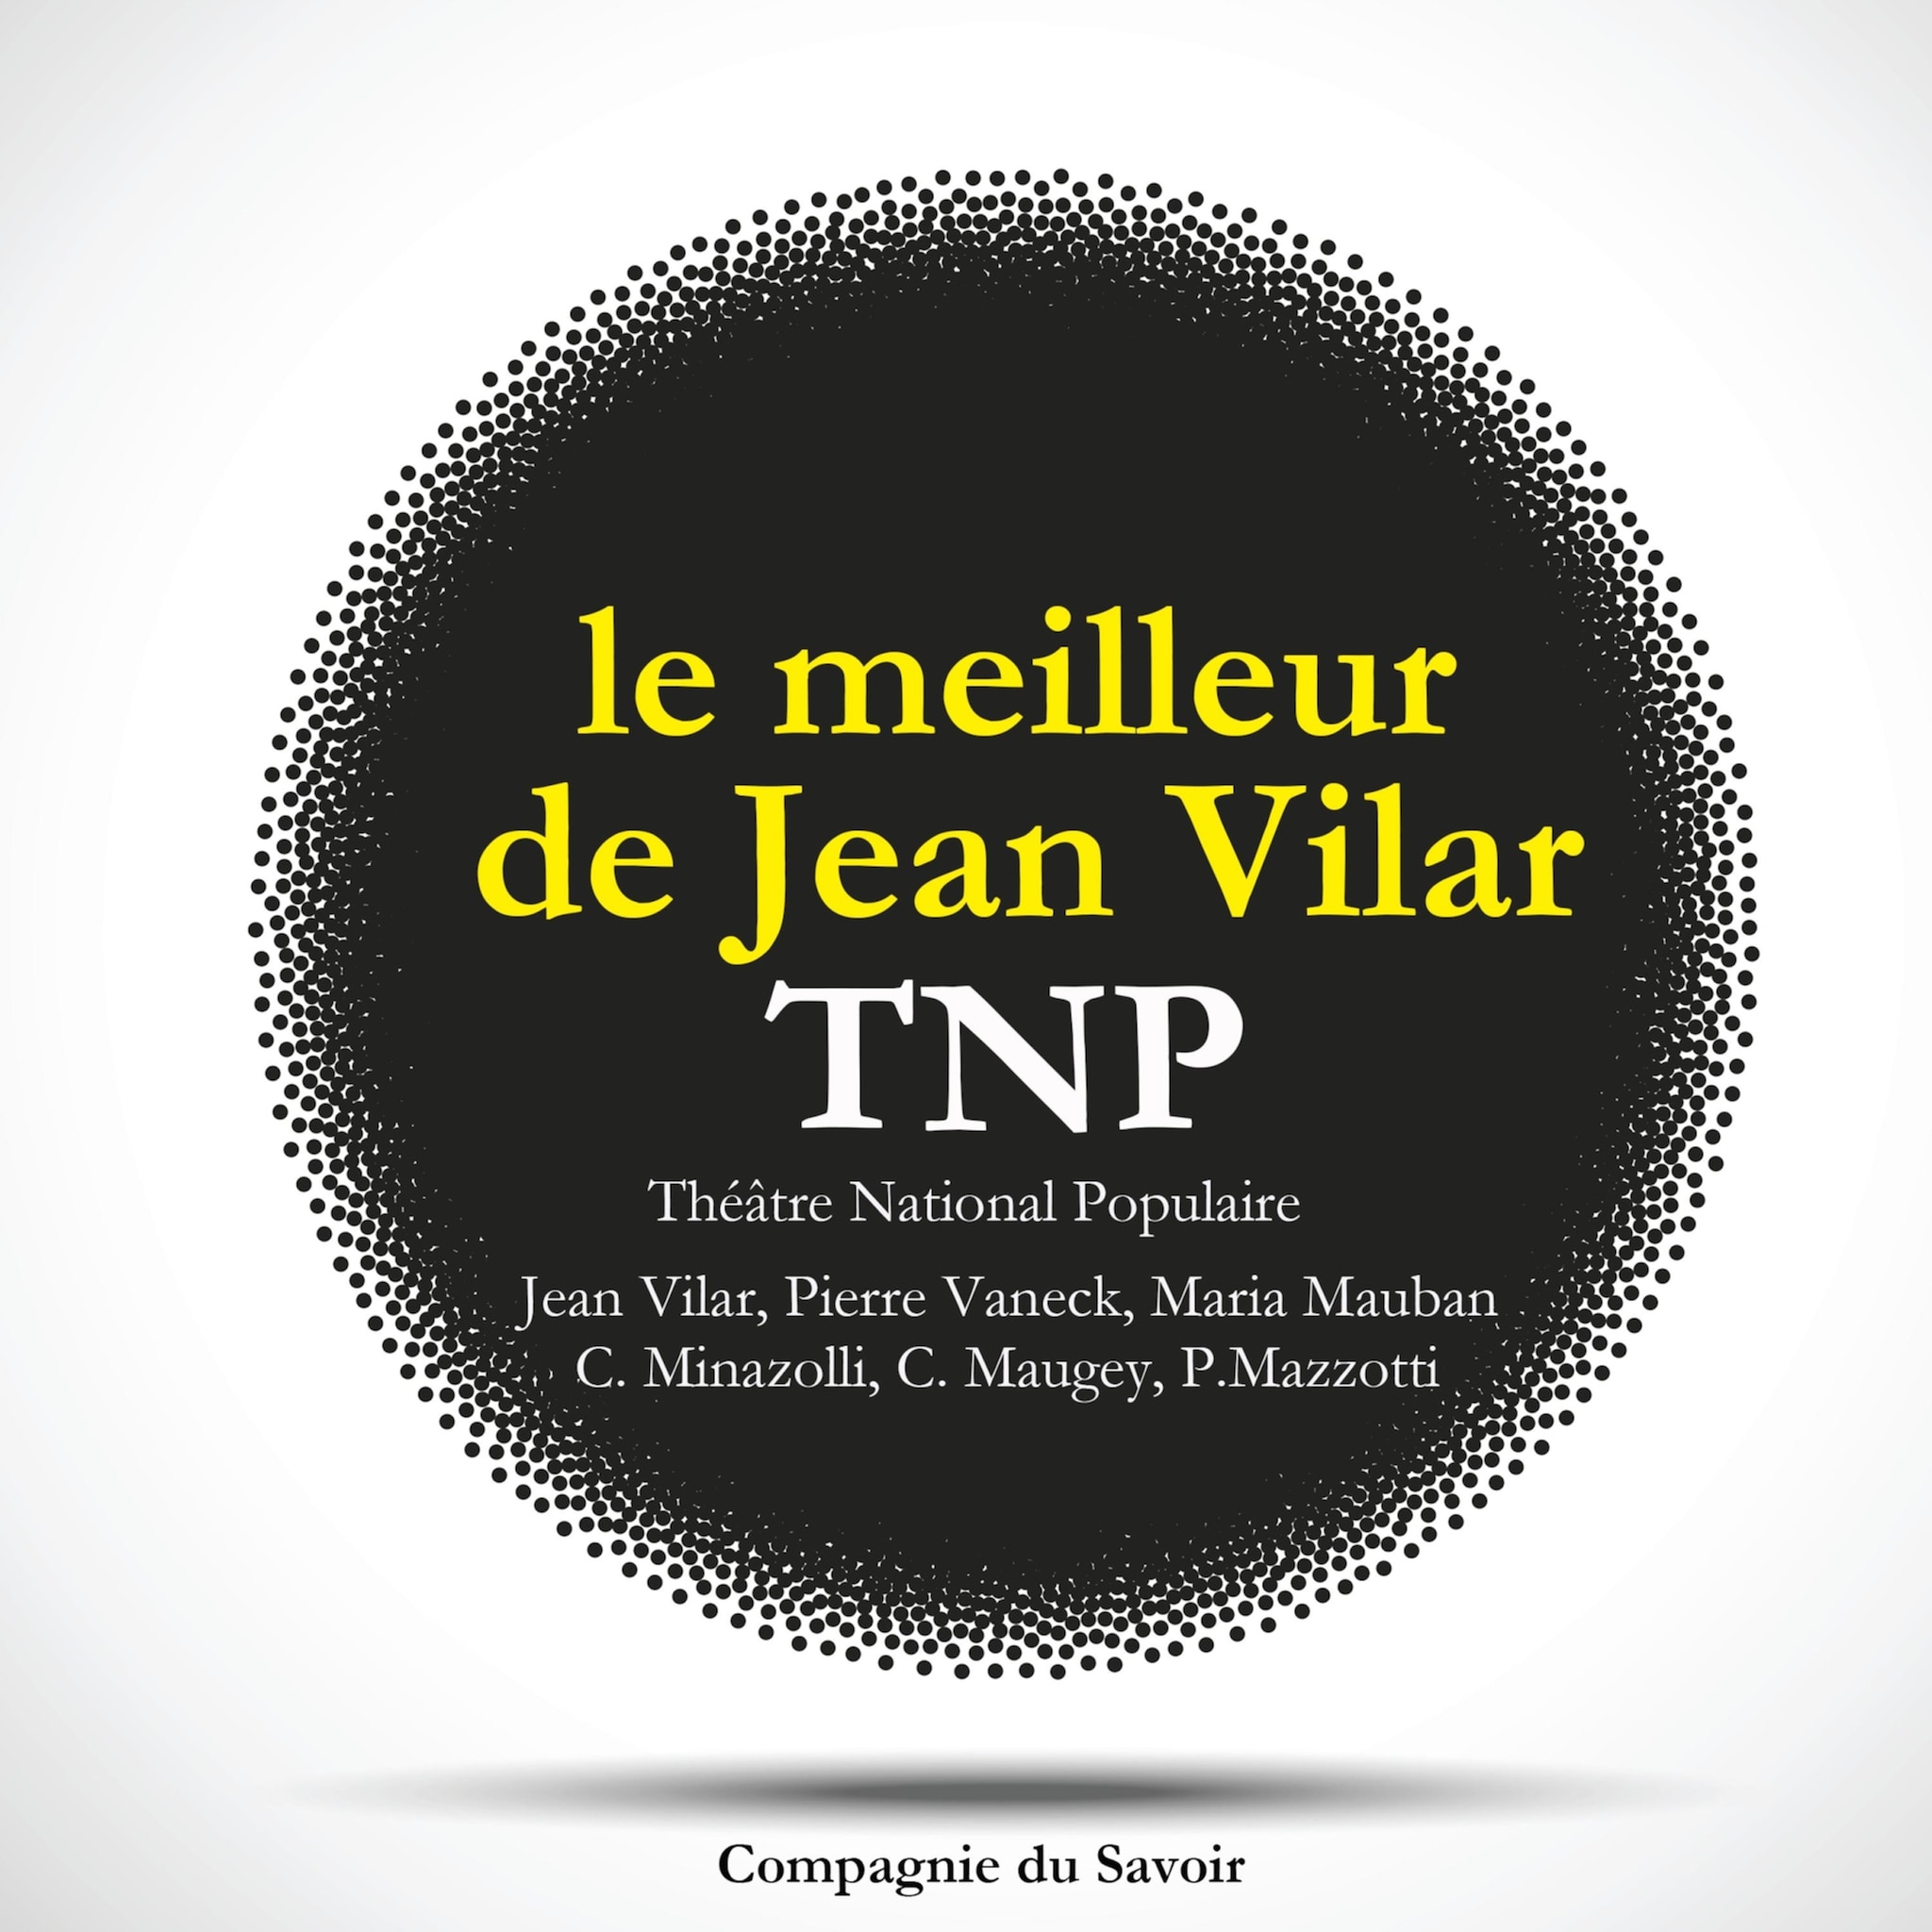 Le meilleur de Jean Vilar au TNP, Theatre National Populaire ilmaiseksi